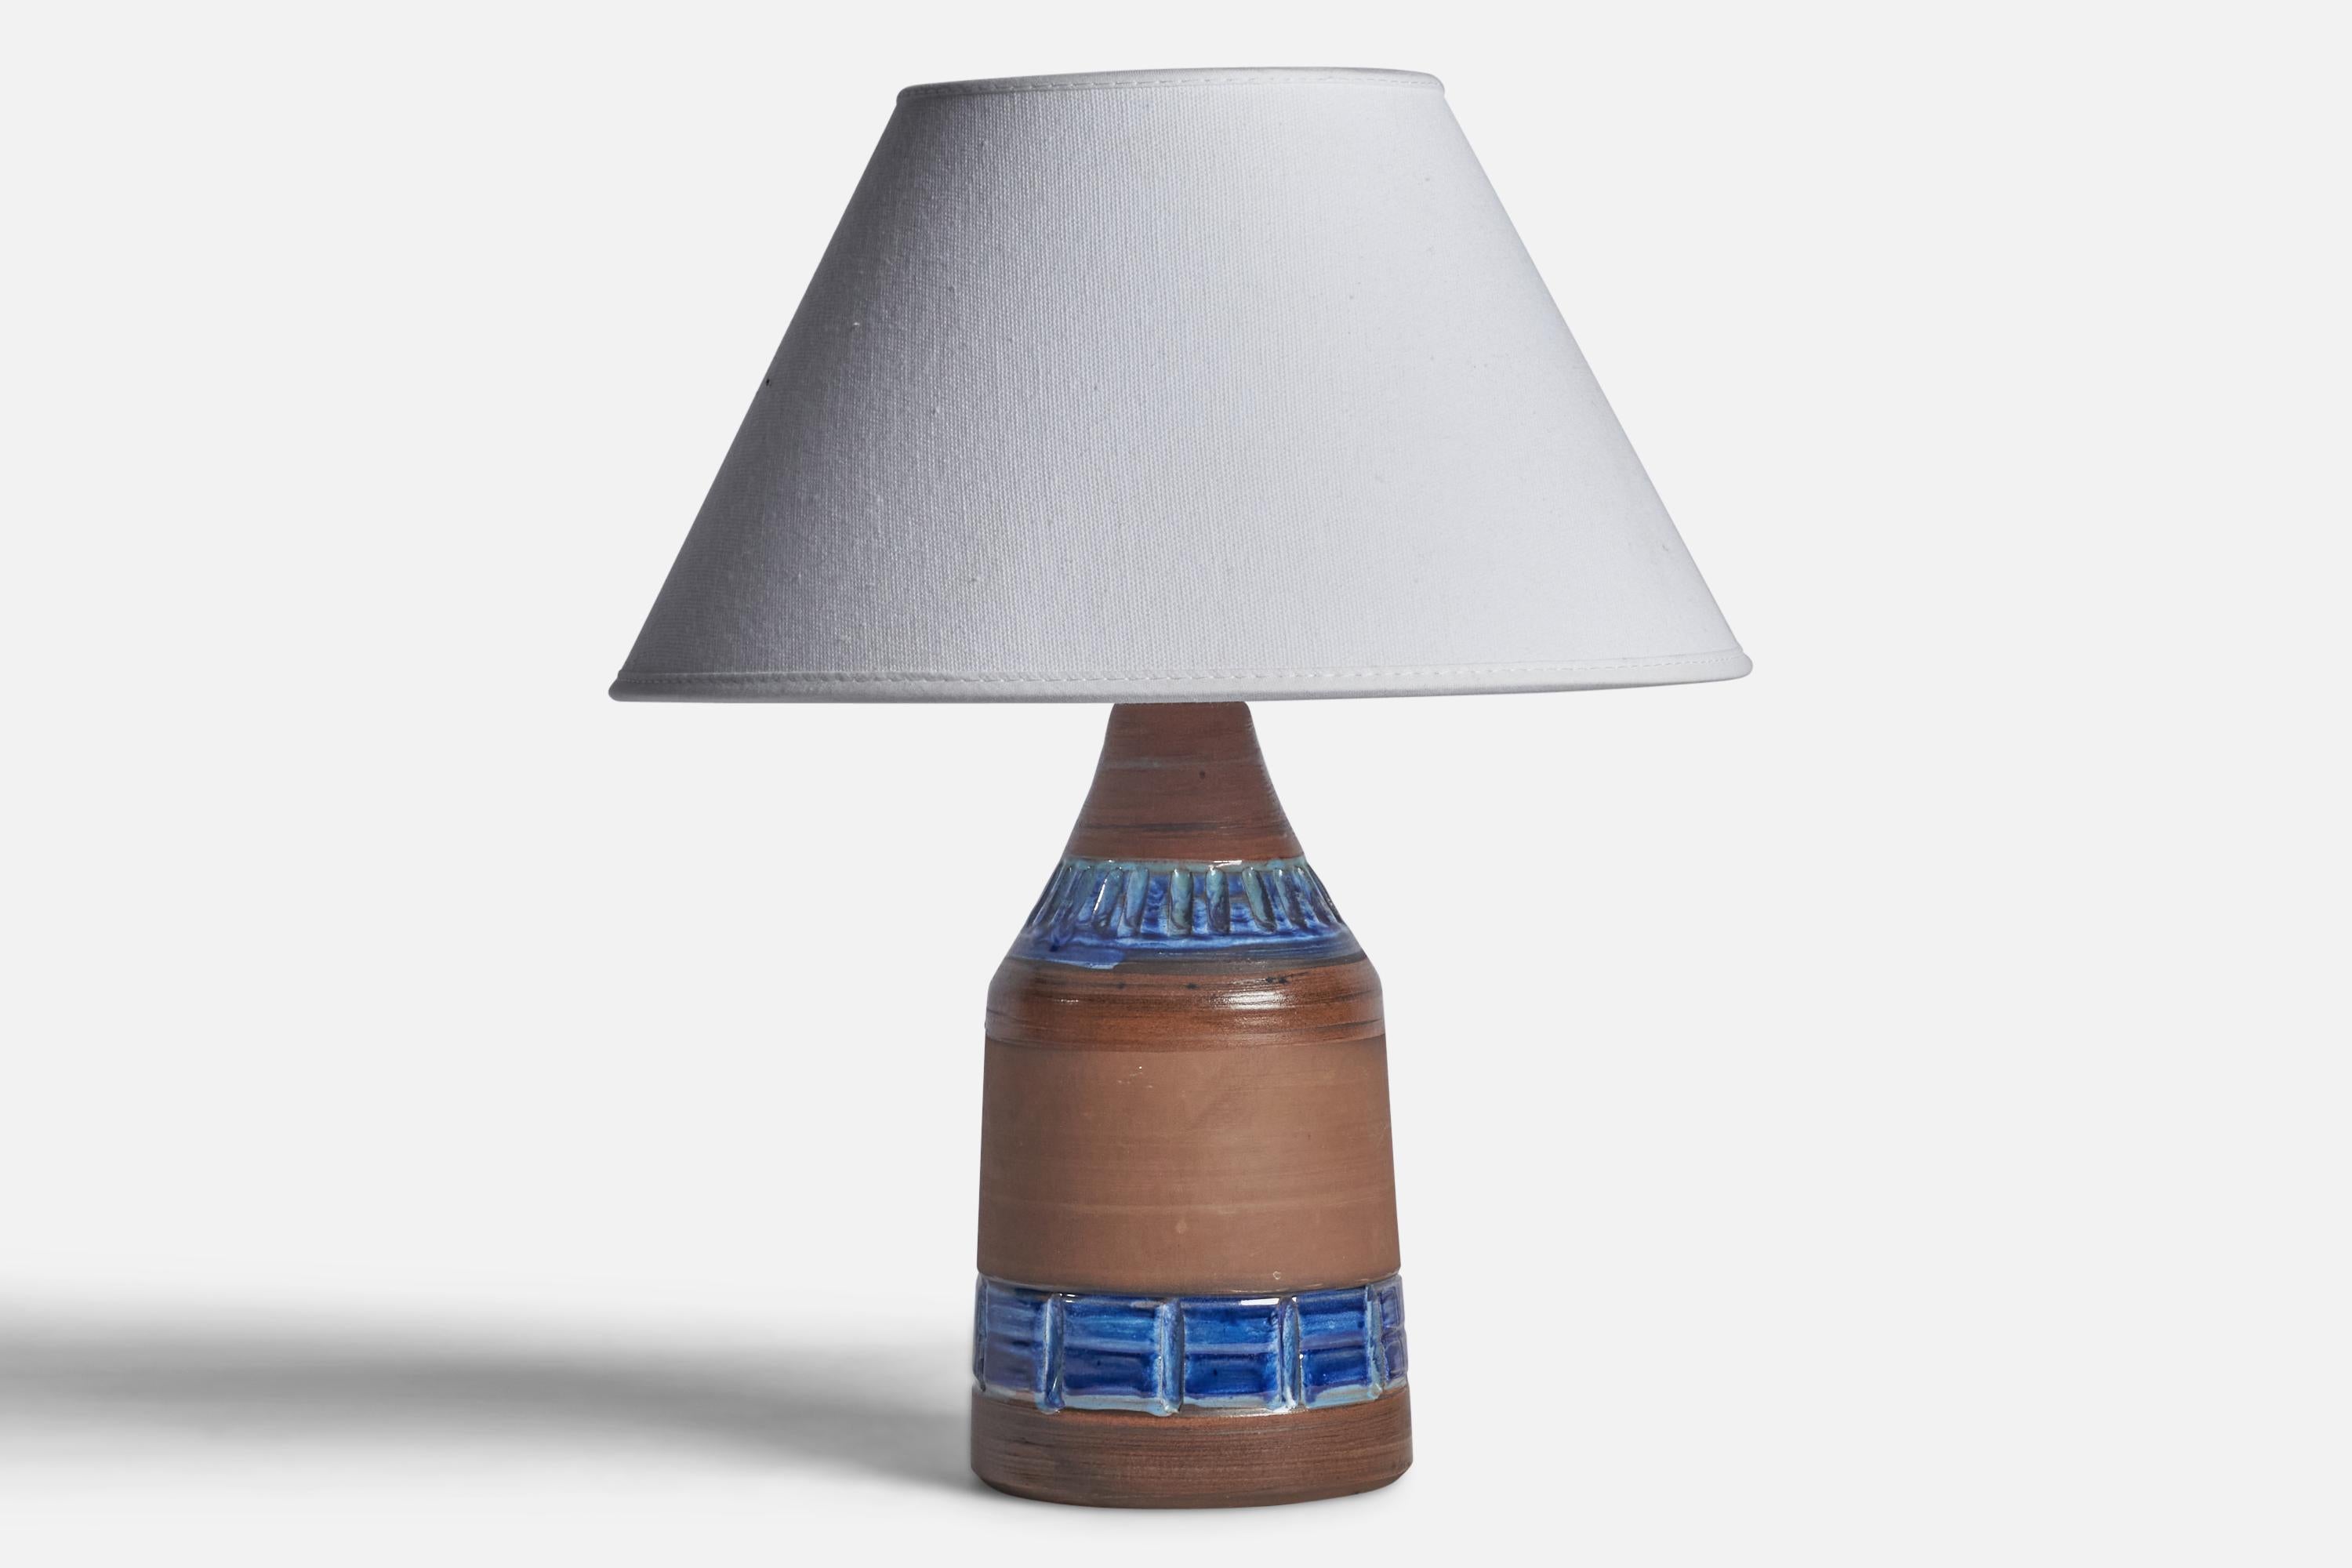 Lampe de table en céramique marron et bleu glacé, conçue et produite en Suède, c.1960.

Dimensions de la lampe (pouces) : 9.25